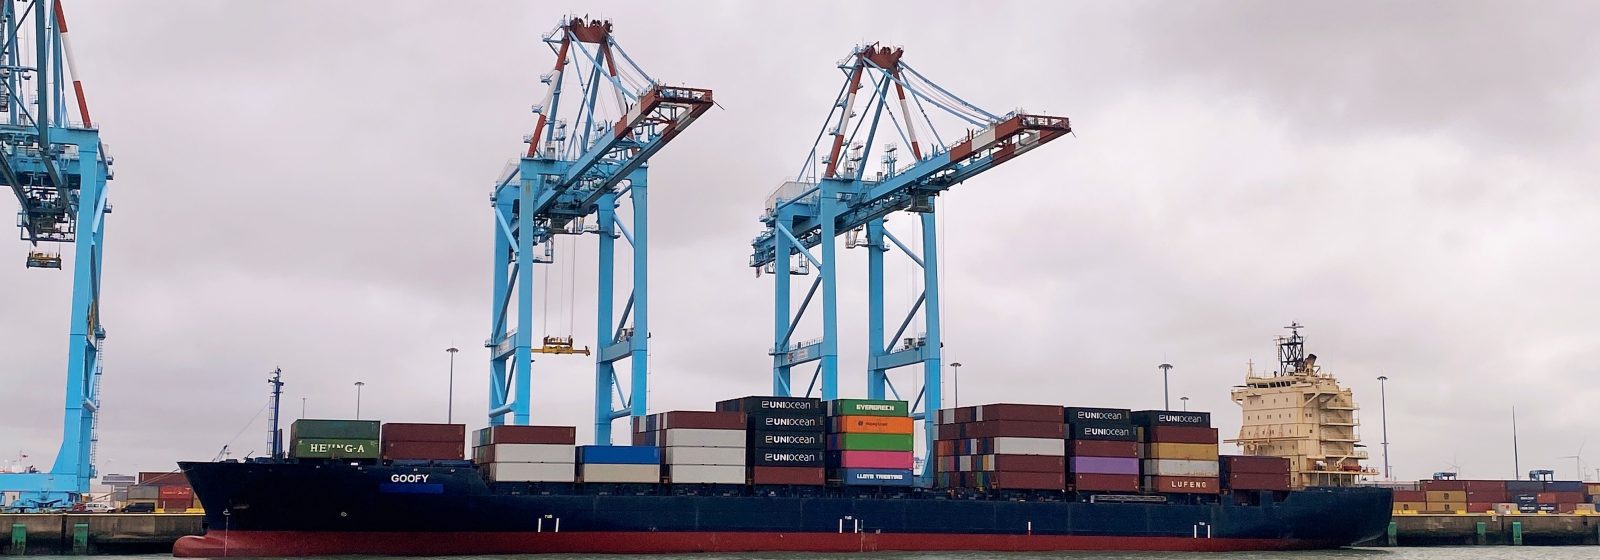 Containerschip 'Goofy' in Zeebrugge